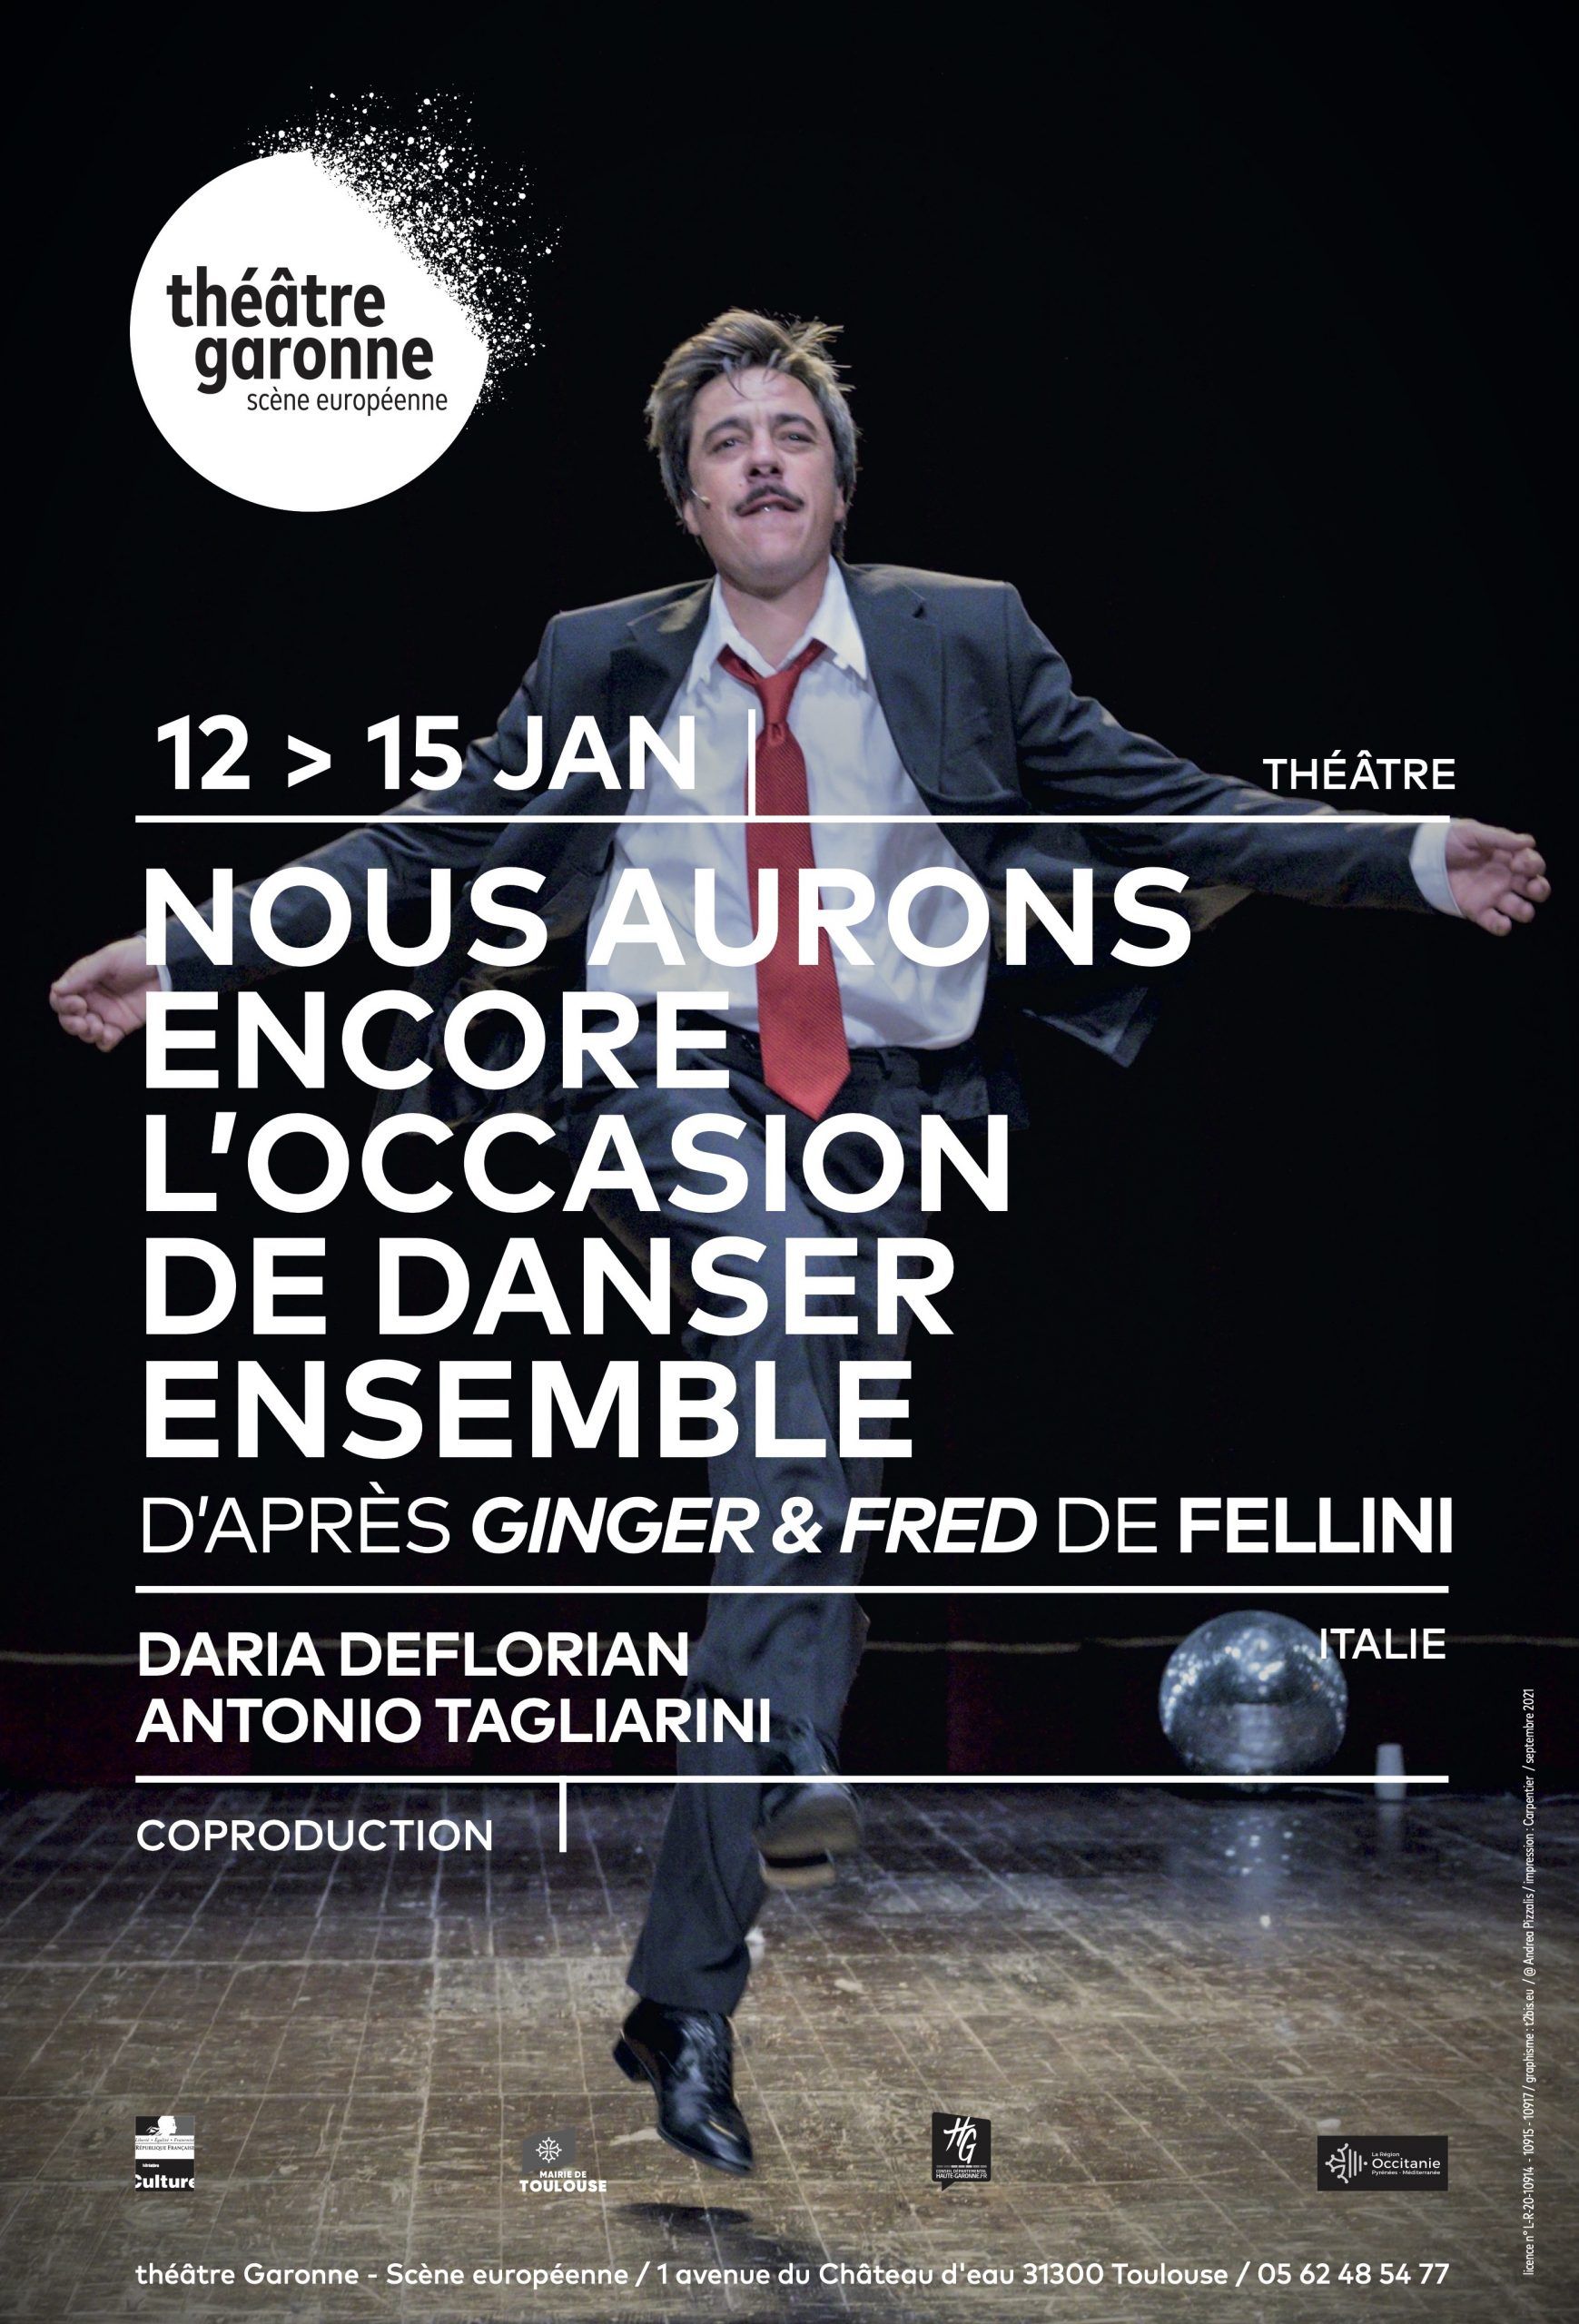 Théâtre Garonne - Nus aurons encore l'occasion de danser ensemble